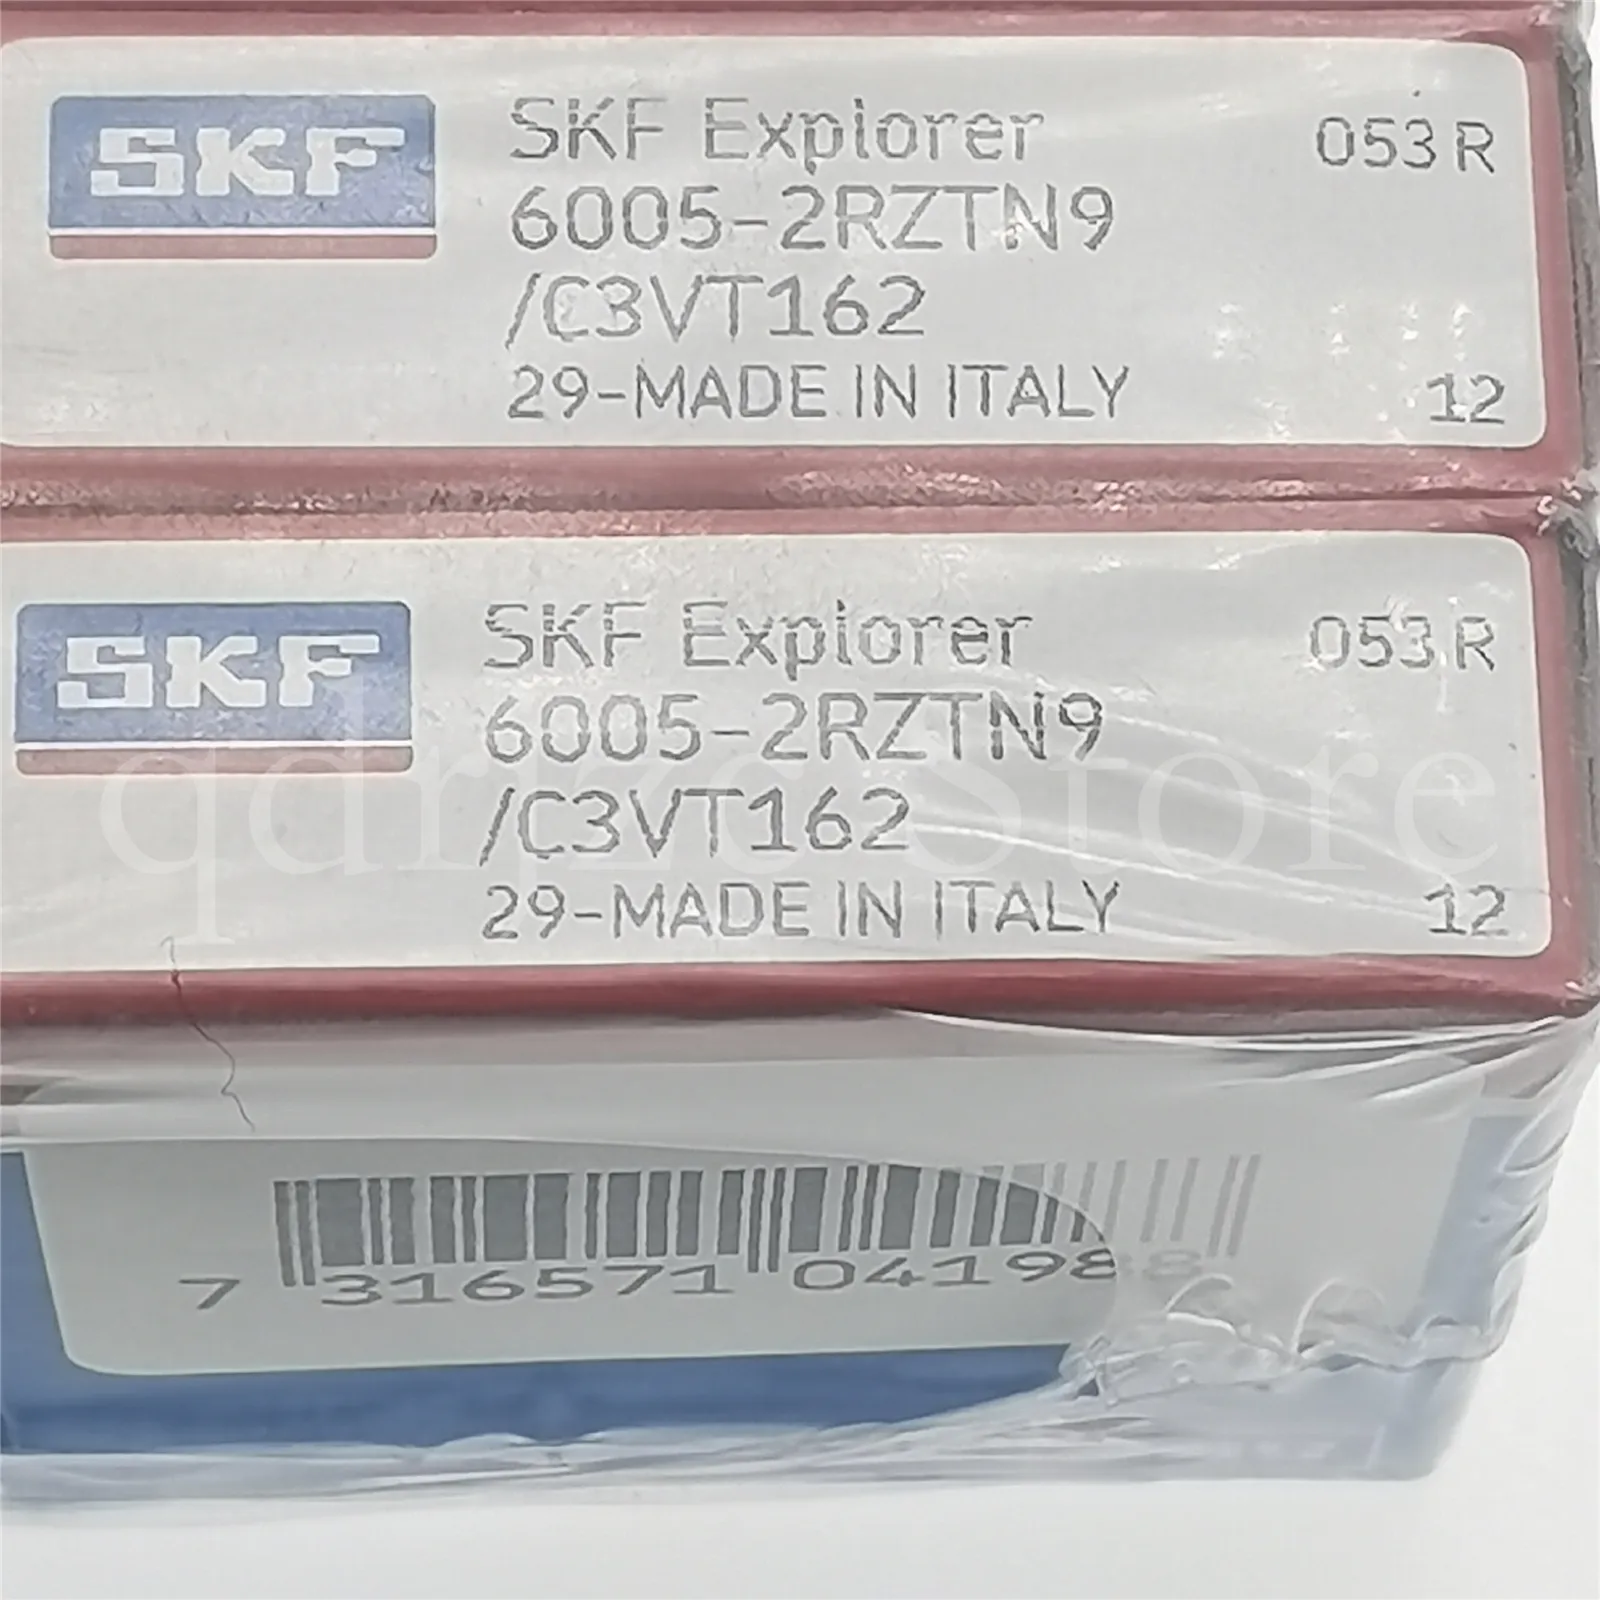 SKF Derin Groove Bilyalı Rulman 6005-2RZTN9 / C3VT162 25mm x 47mm x 12mm